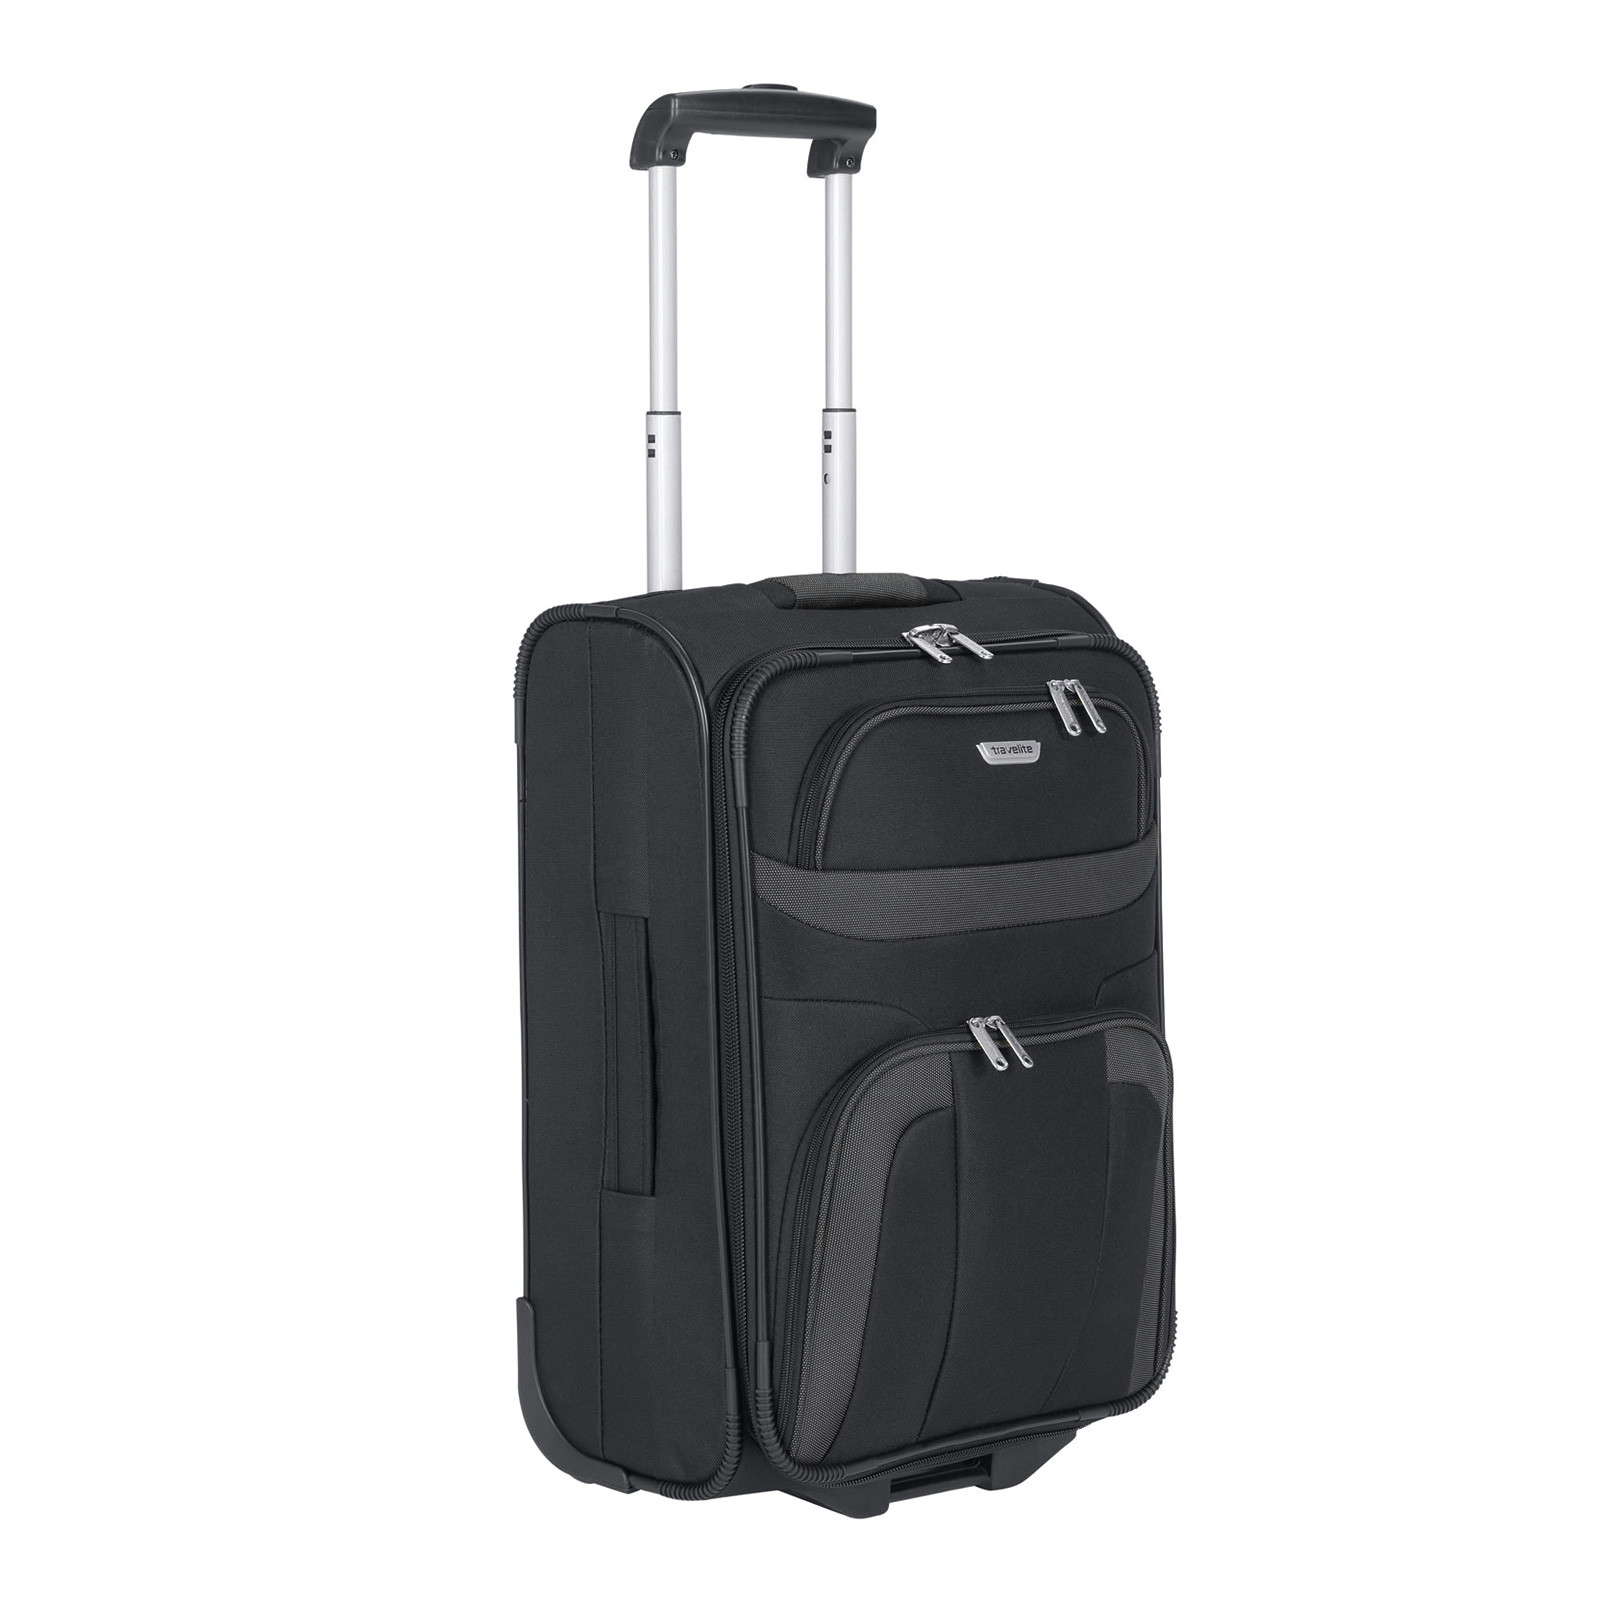 Easy to Draw Suitcase Travelite orlando Kabinentrolley 53 Cm 2 Rollen Schwarz